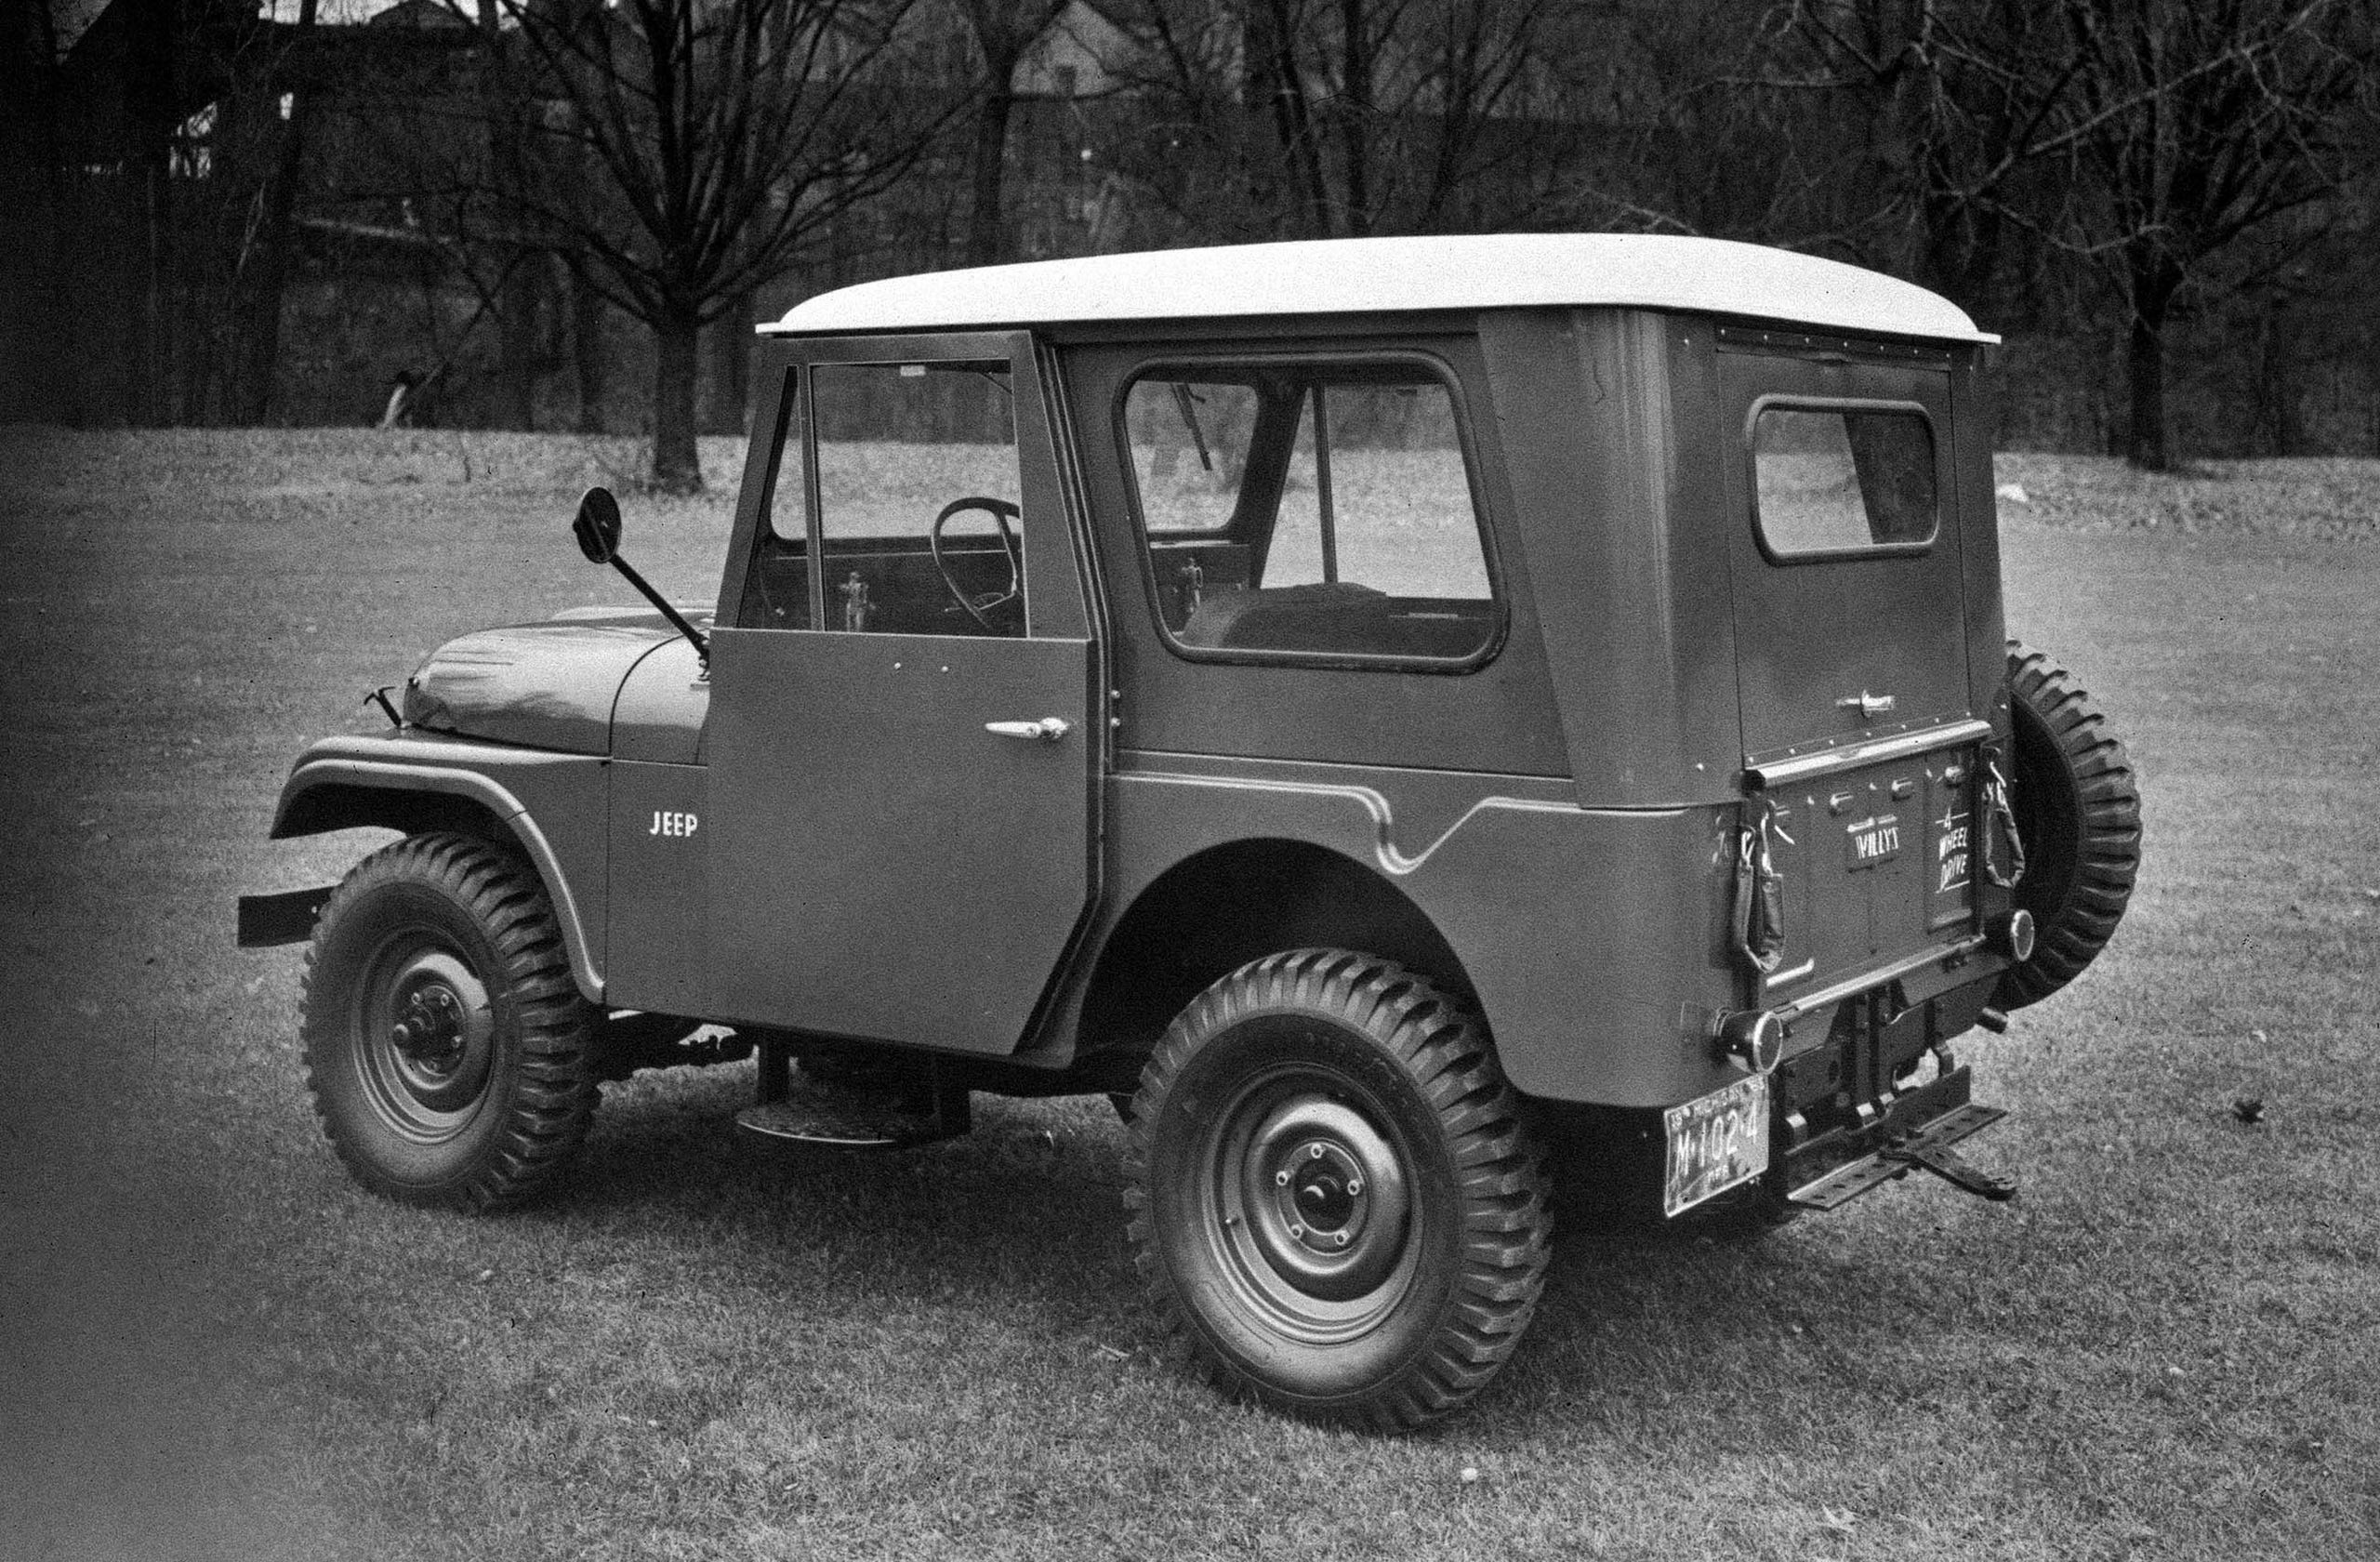 A 1955 Jeep CJ-5.